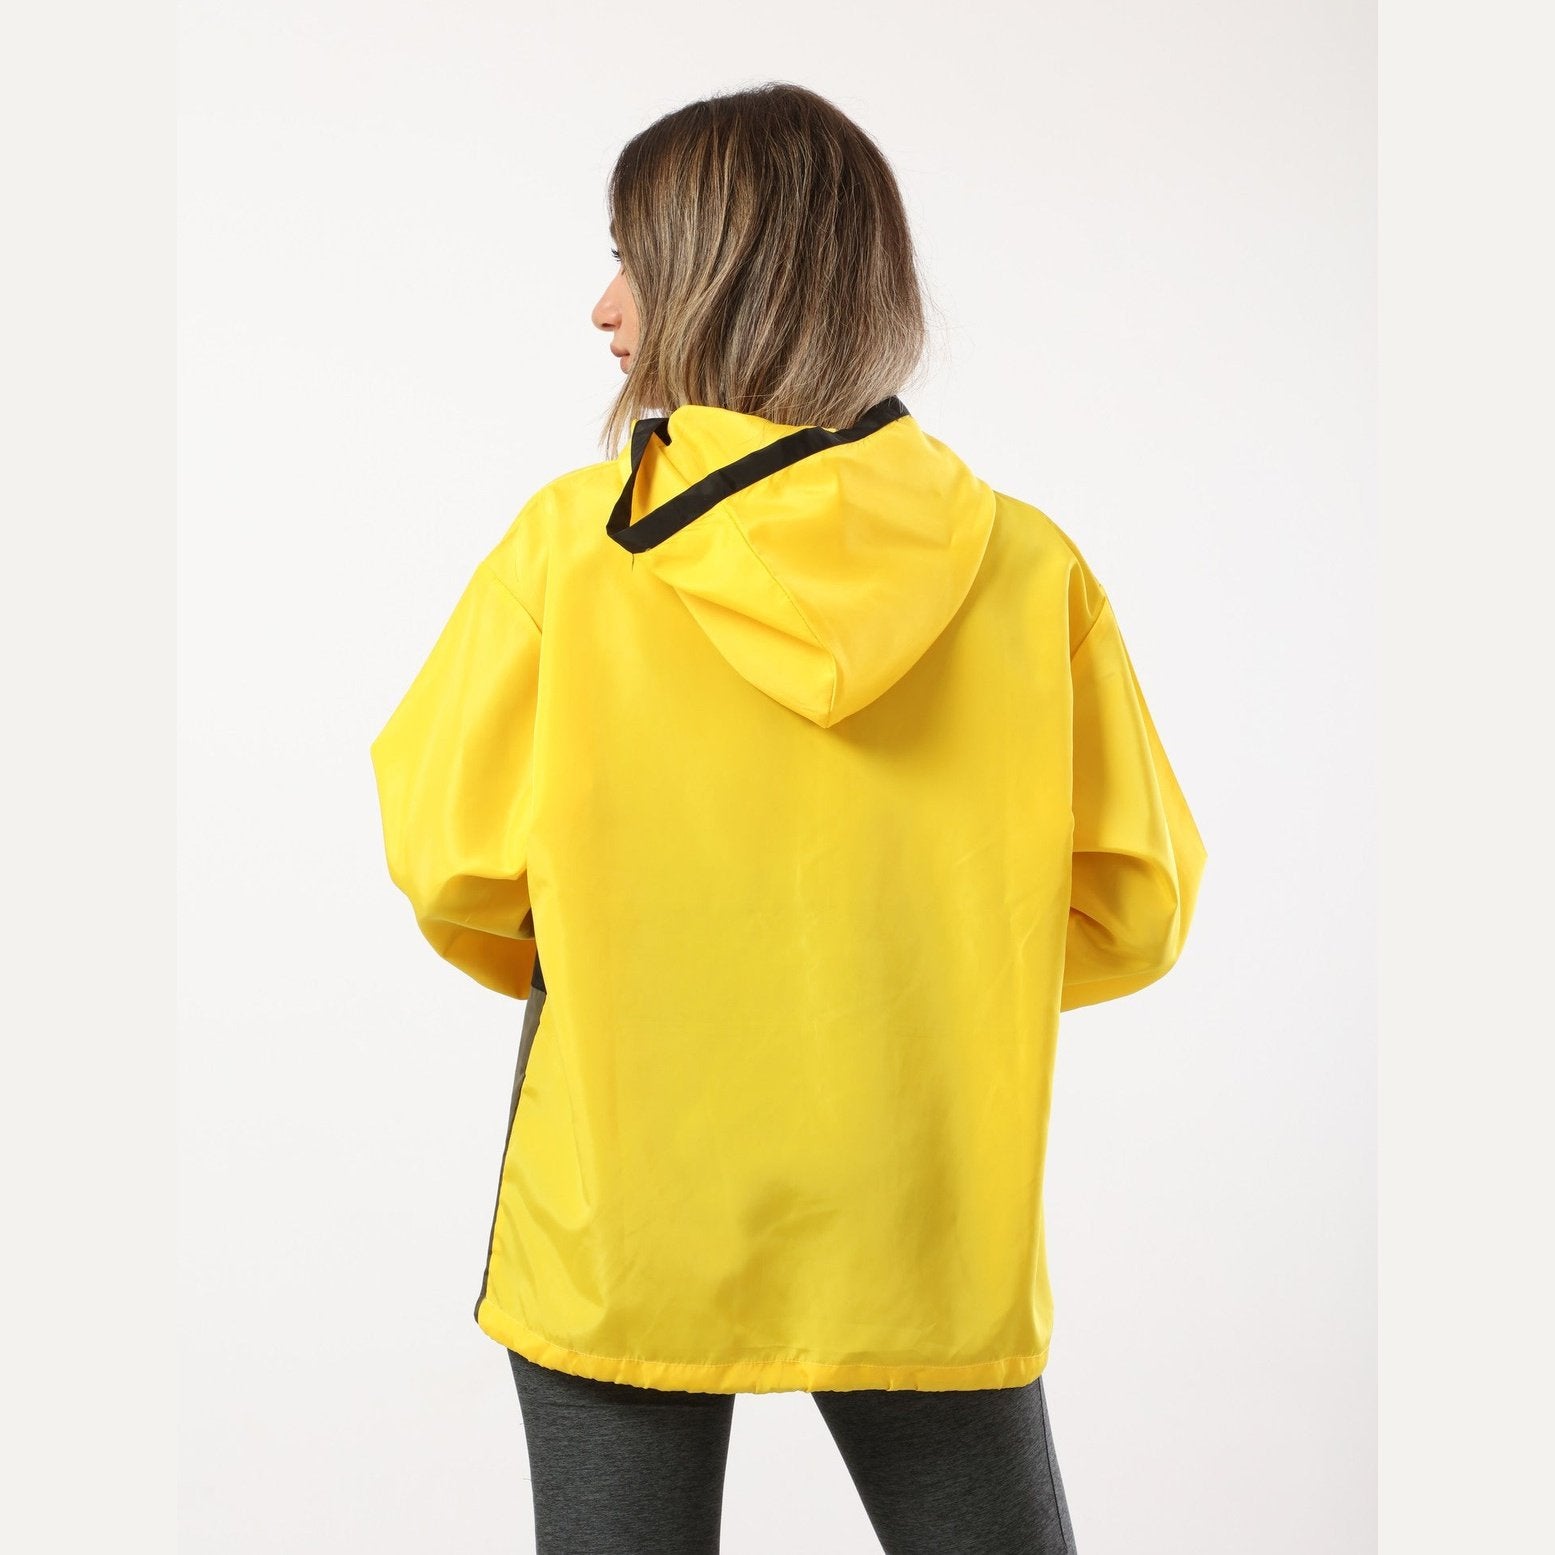 Oversized Yellow Half Zipper Waterproof Jacket - Sporty Pro